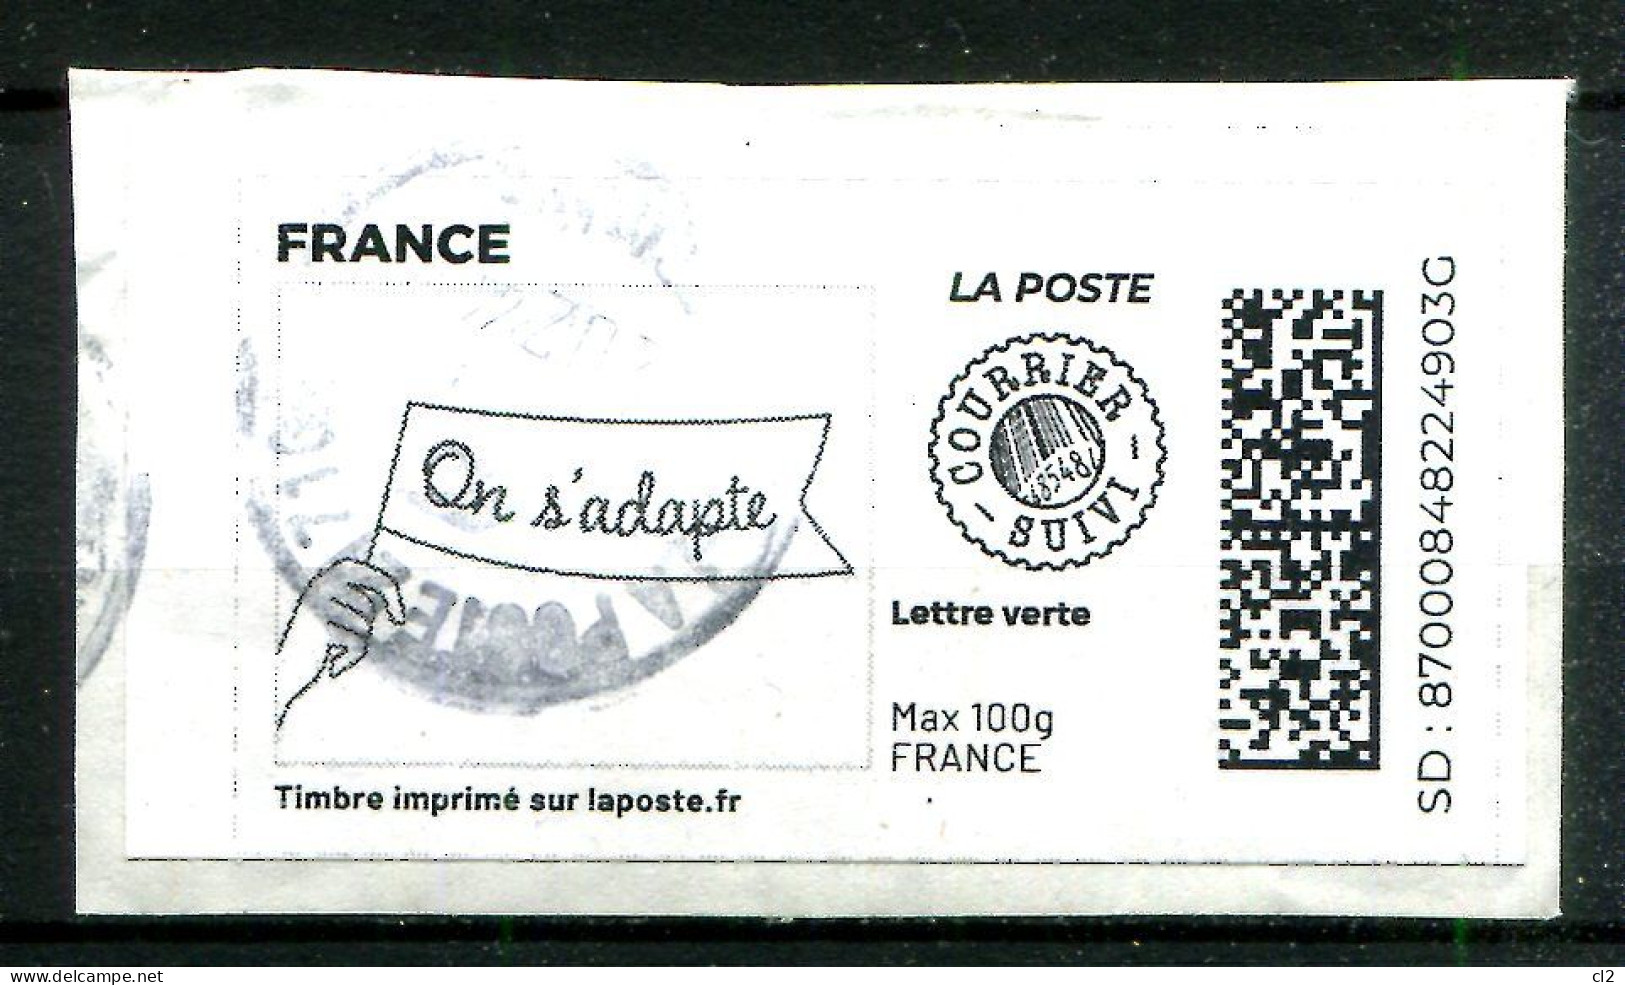 FRANCE - Timbre à Imprimer - Lettre Verte Suivie Max 100g - On S'adapte - Sellos Imprimibles (Montimbrenligne)